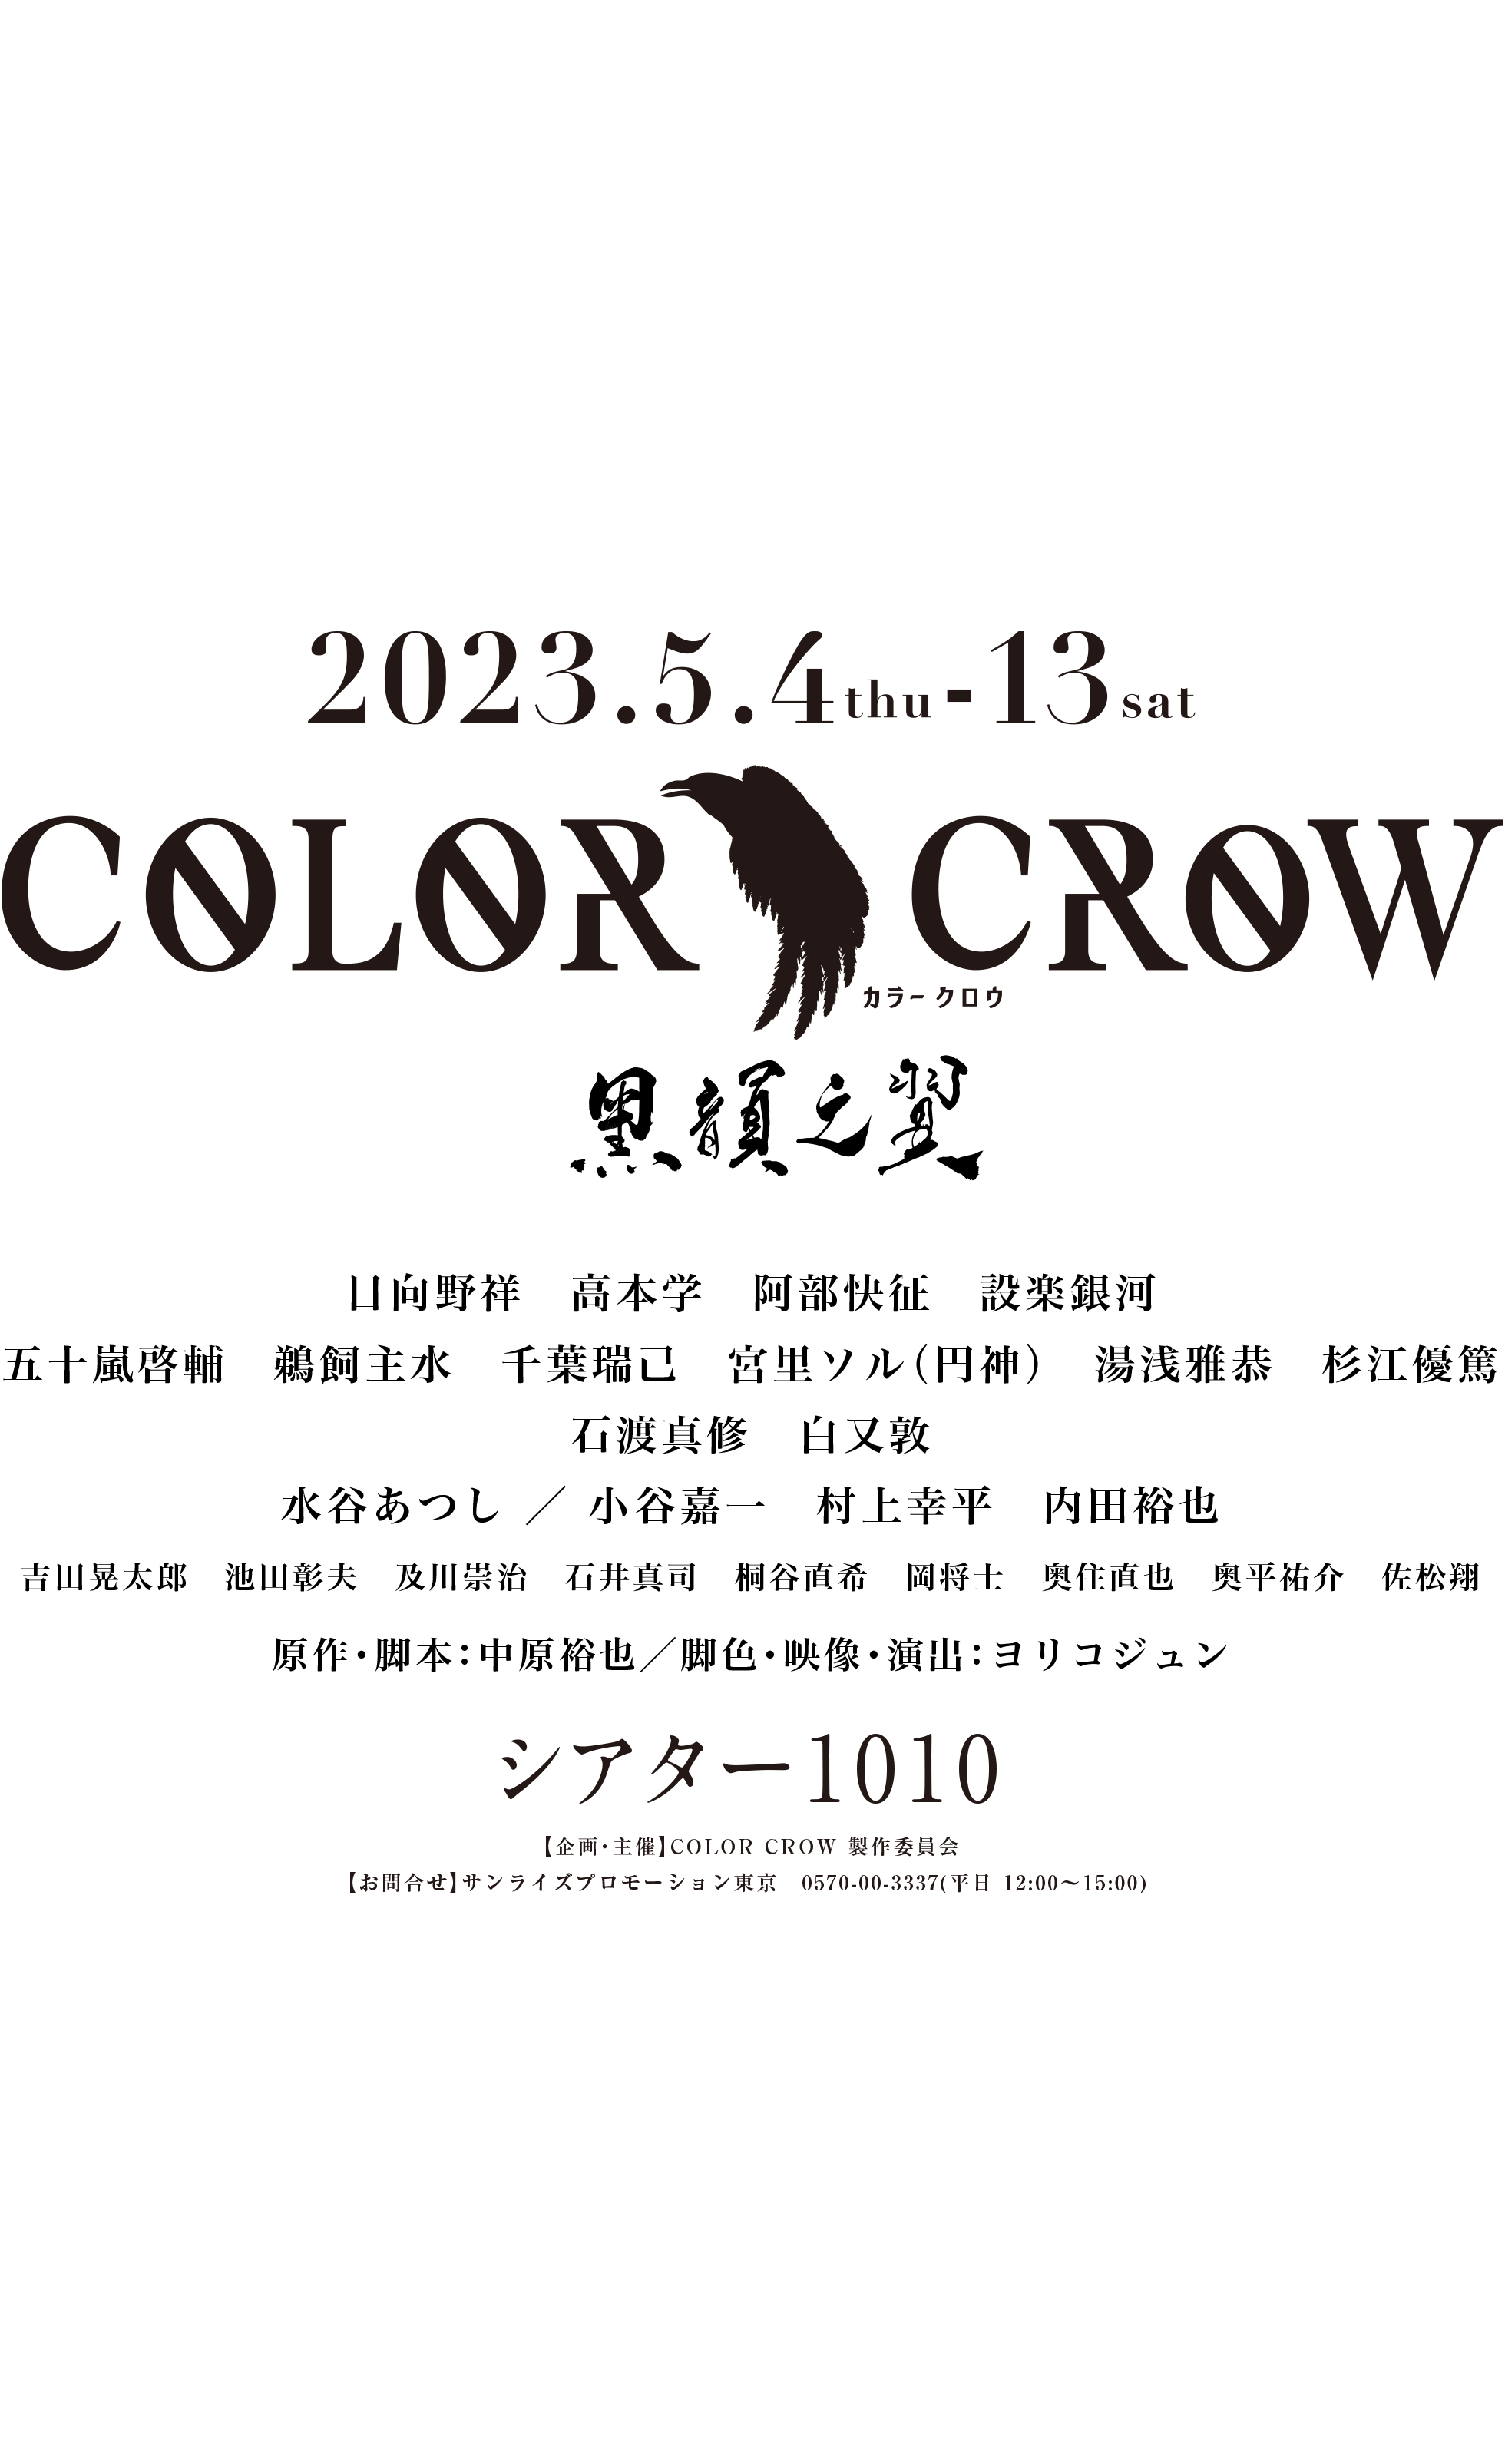 COLOR CROW